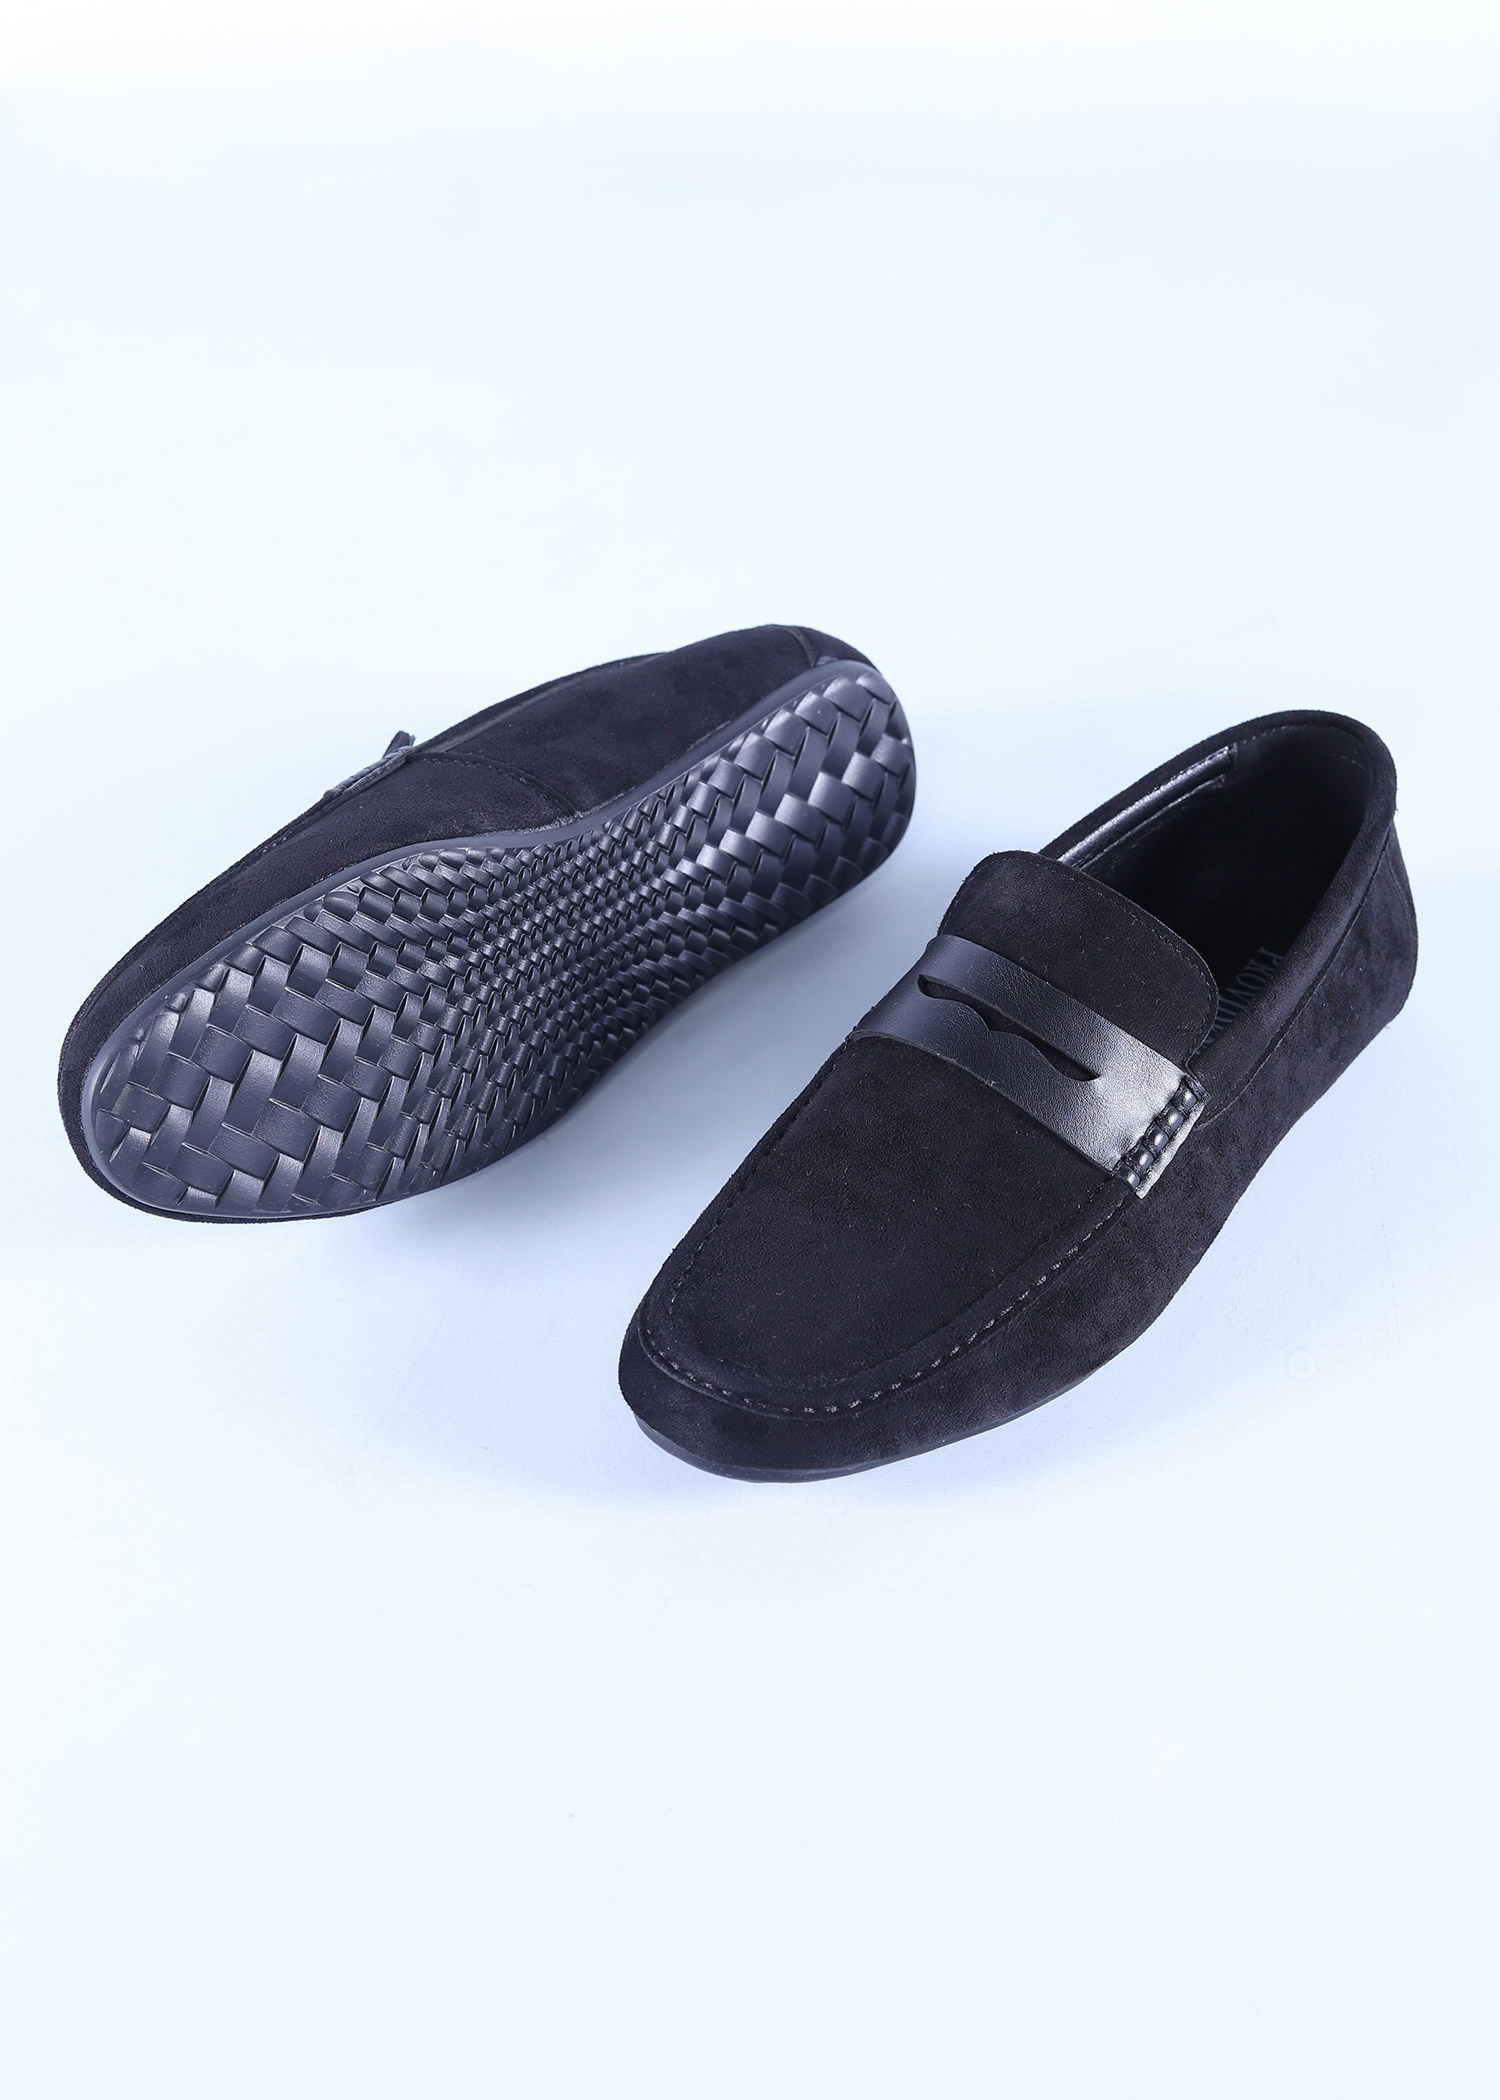 navia mens shoes black color sole